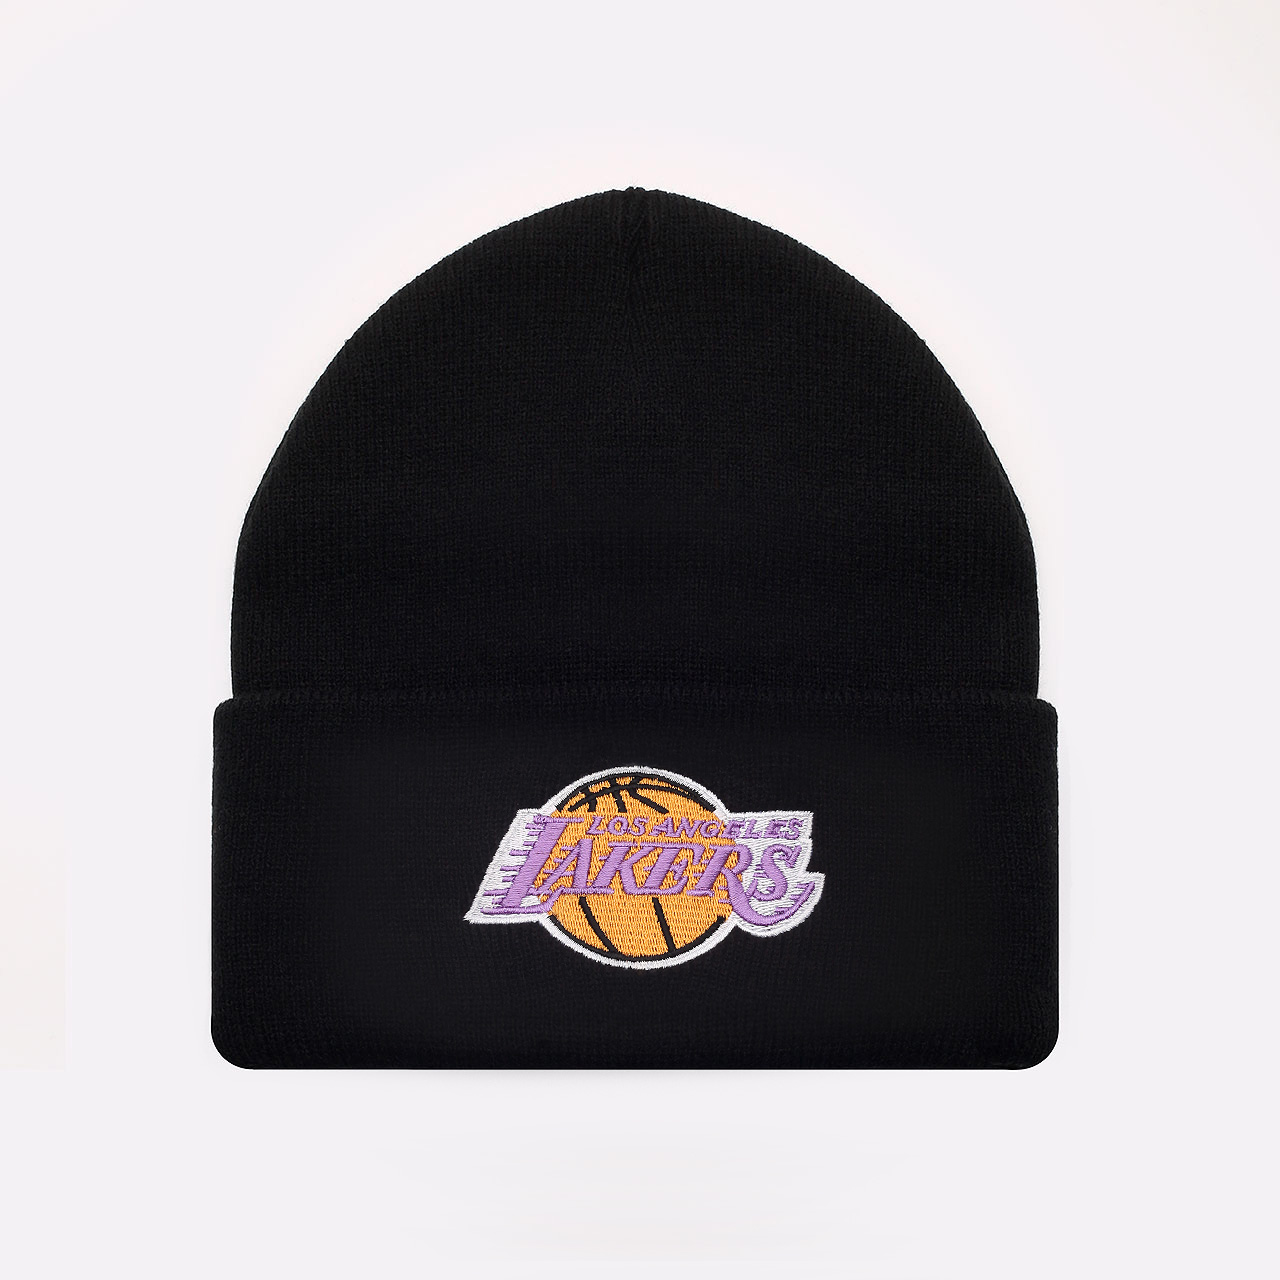  черная шапка Mitchell and ness Lakers KTCFFH21HW017-LALB - цена, описание, фото 1